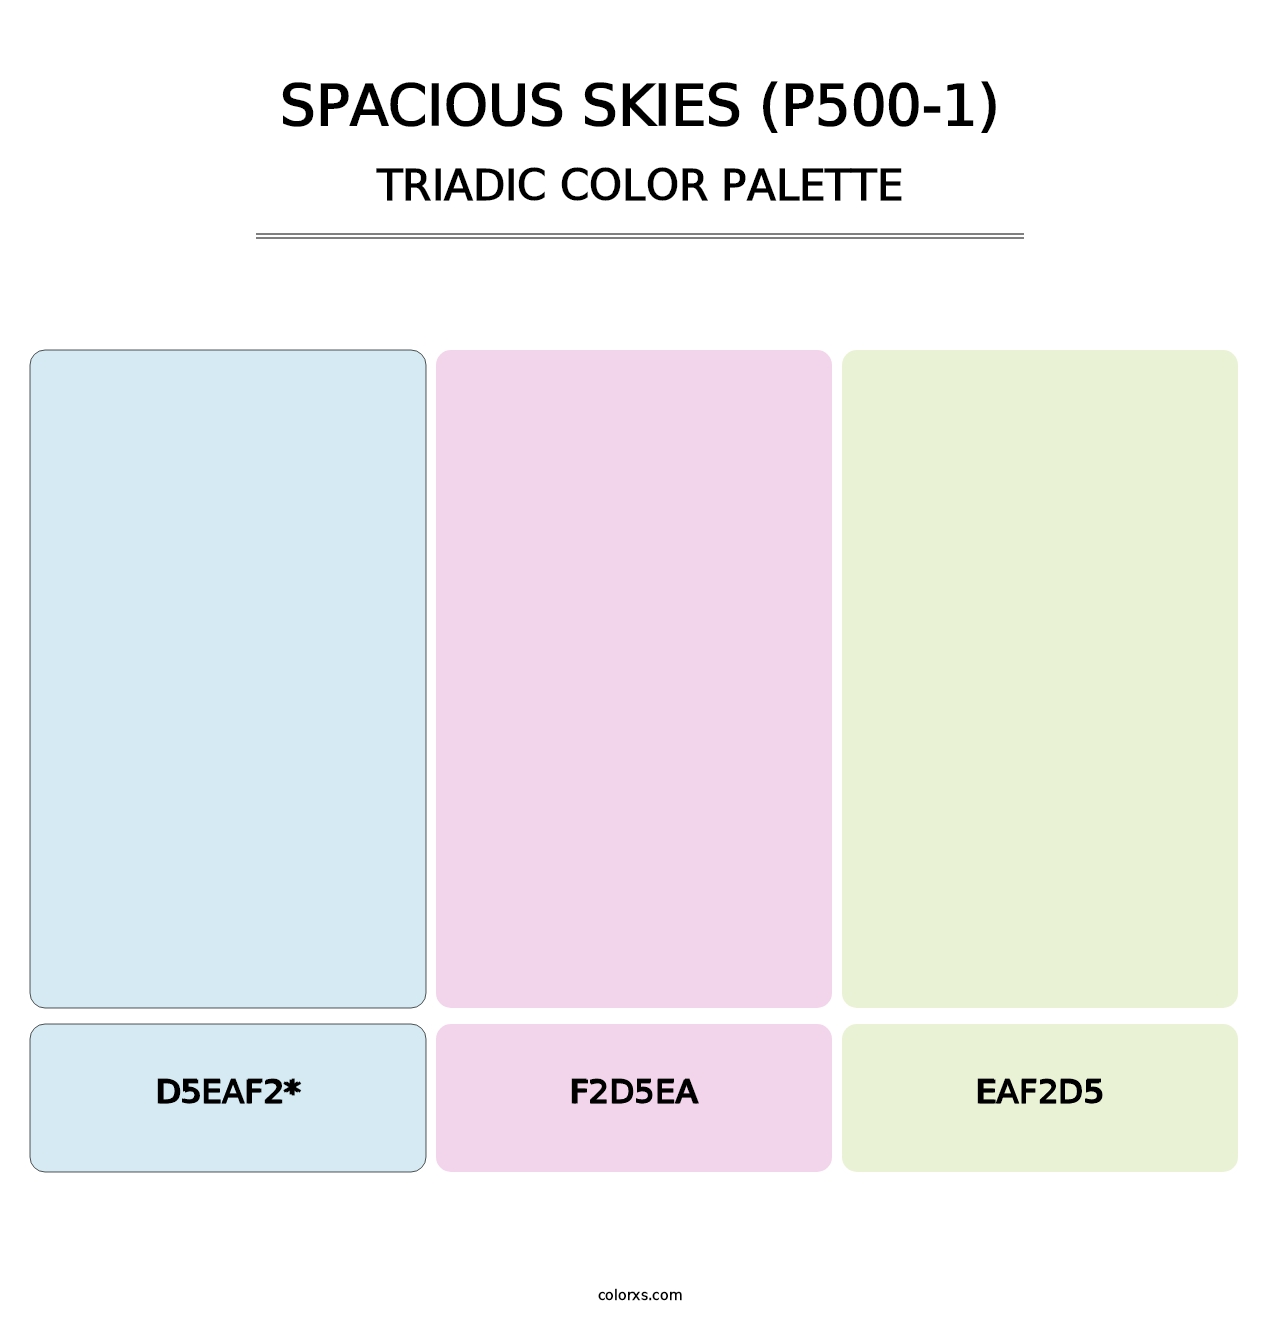 Spacious Skies (P500-1) - Triadic Color Palette